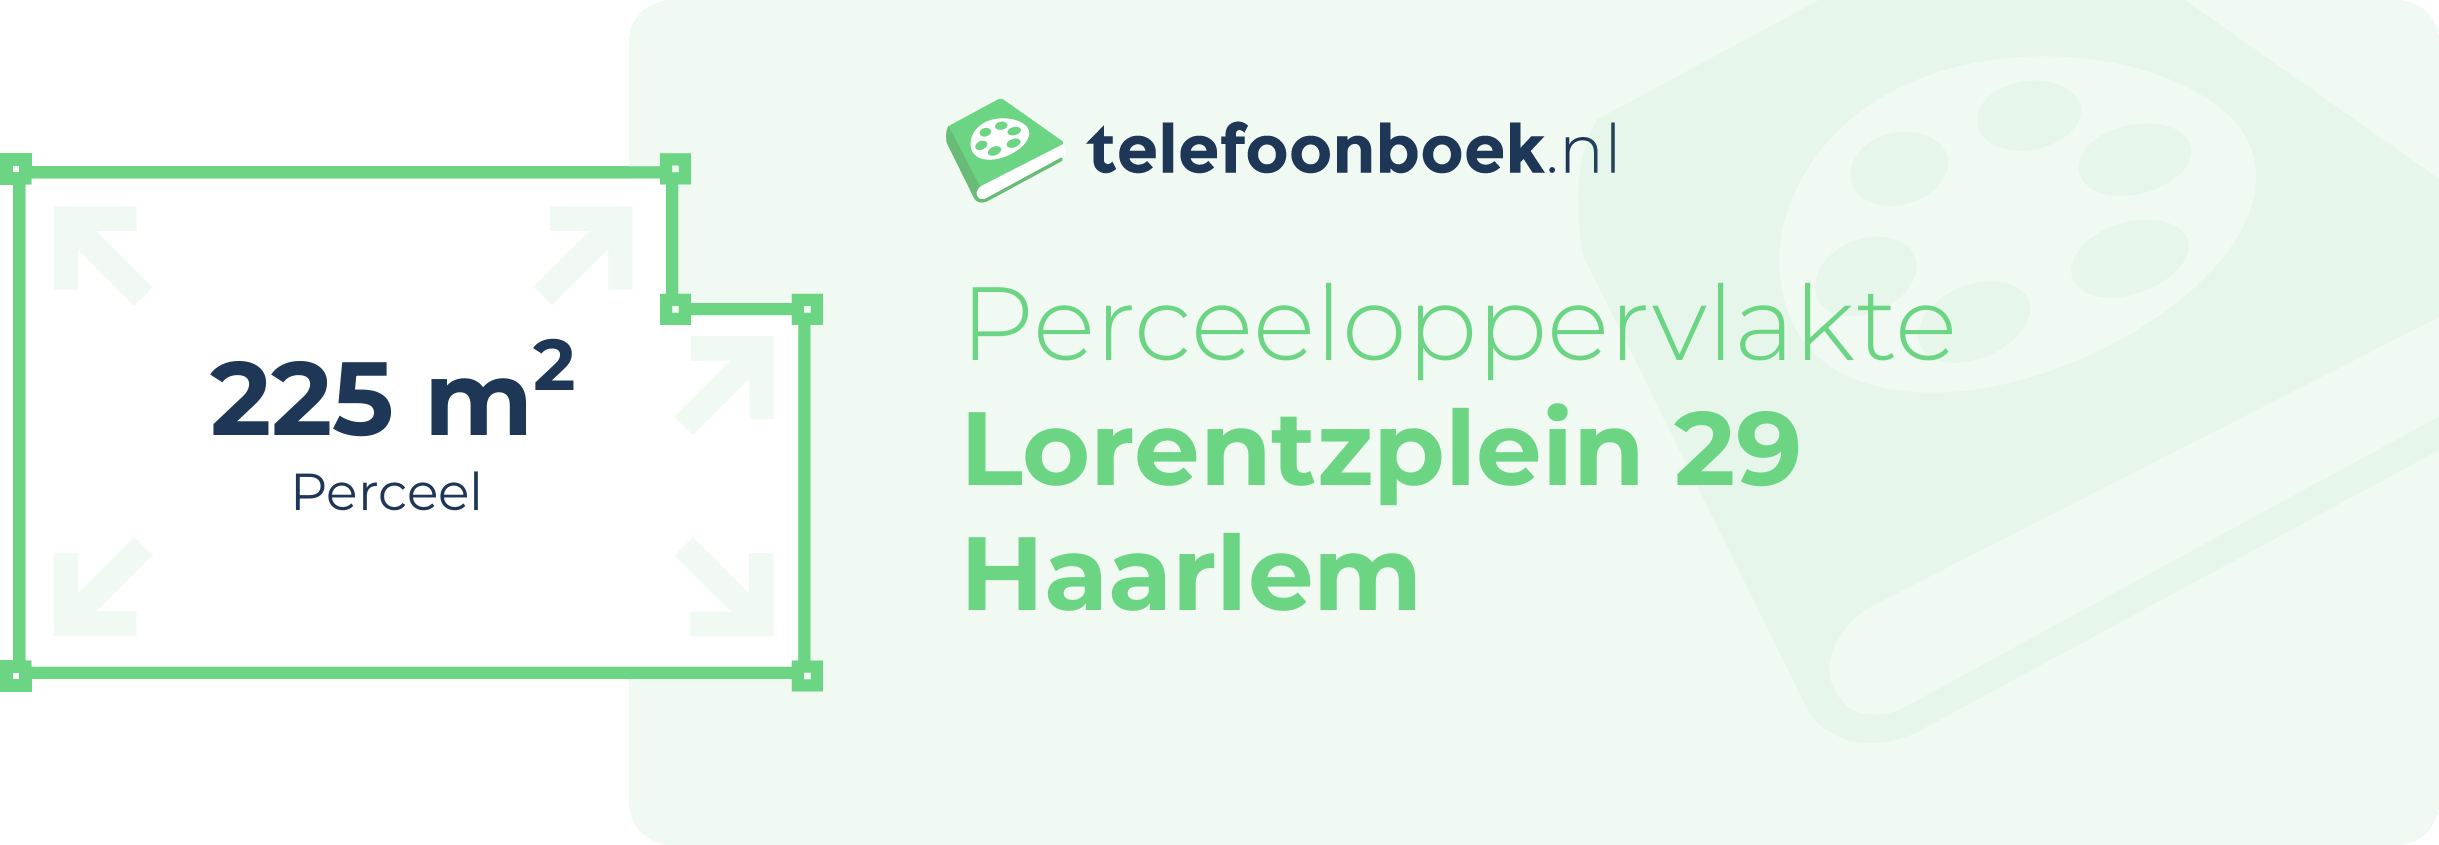 Perceeloppervlakte Lorentzplein 29 Haarlem